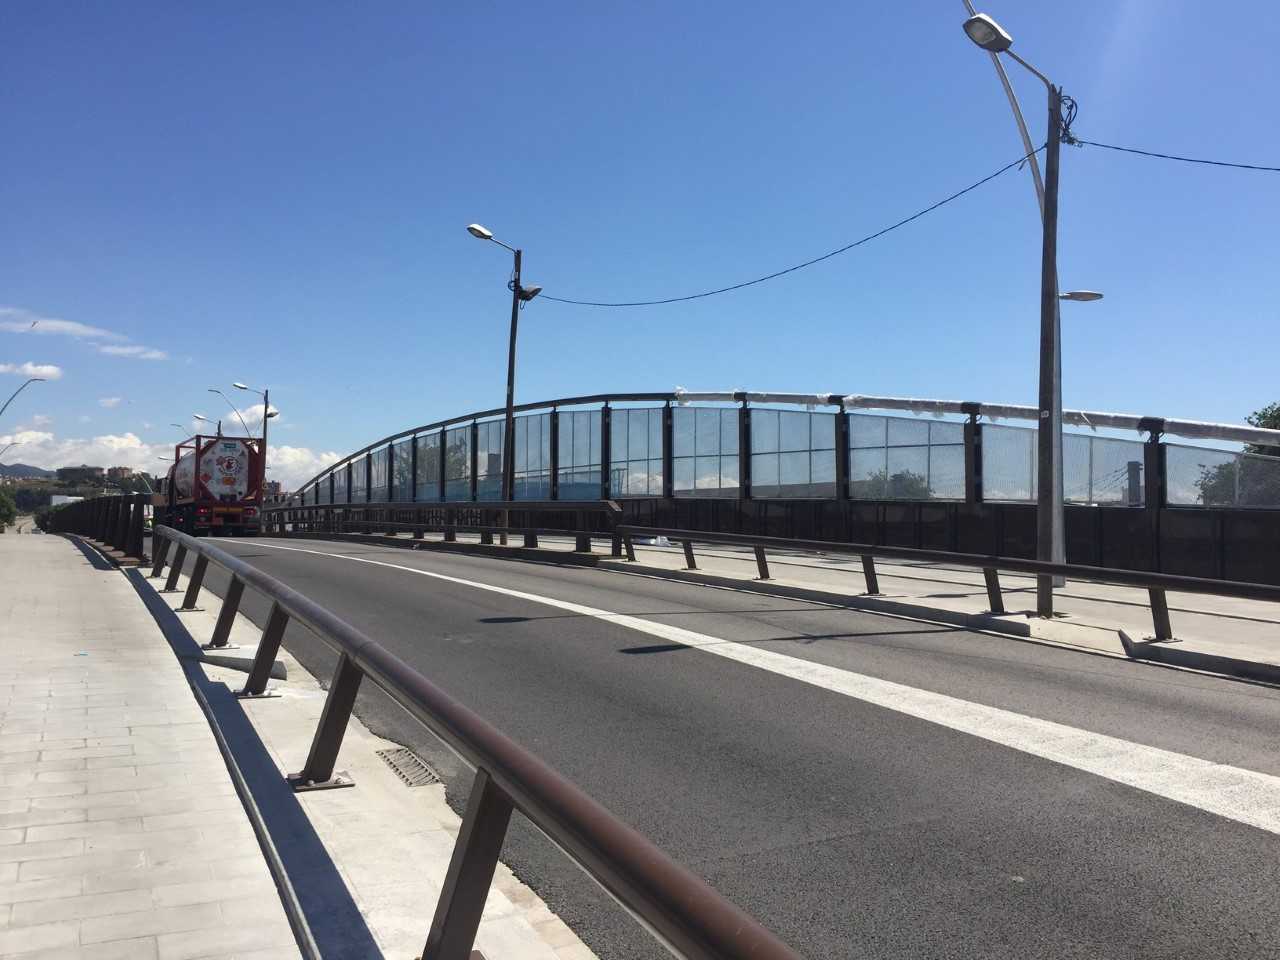 Barcelona inaugura el nou pont de Santander que permet comunicar millor Sant Andreu i Sant Martí